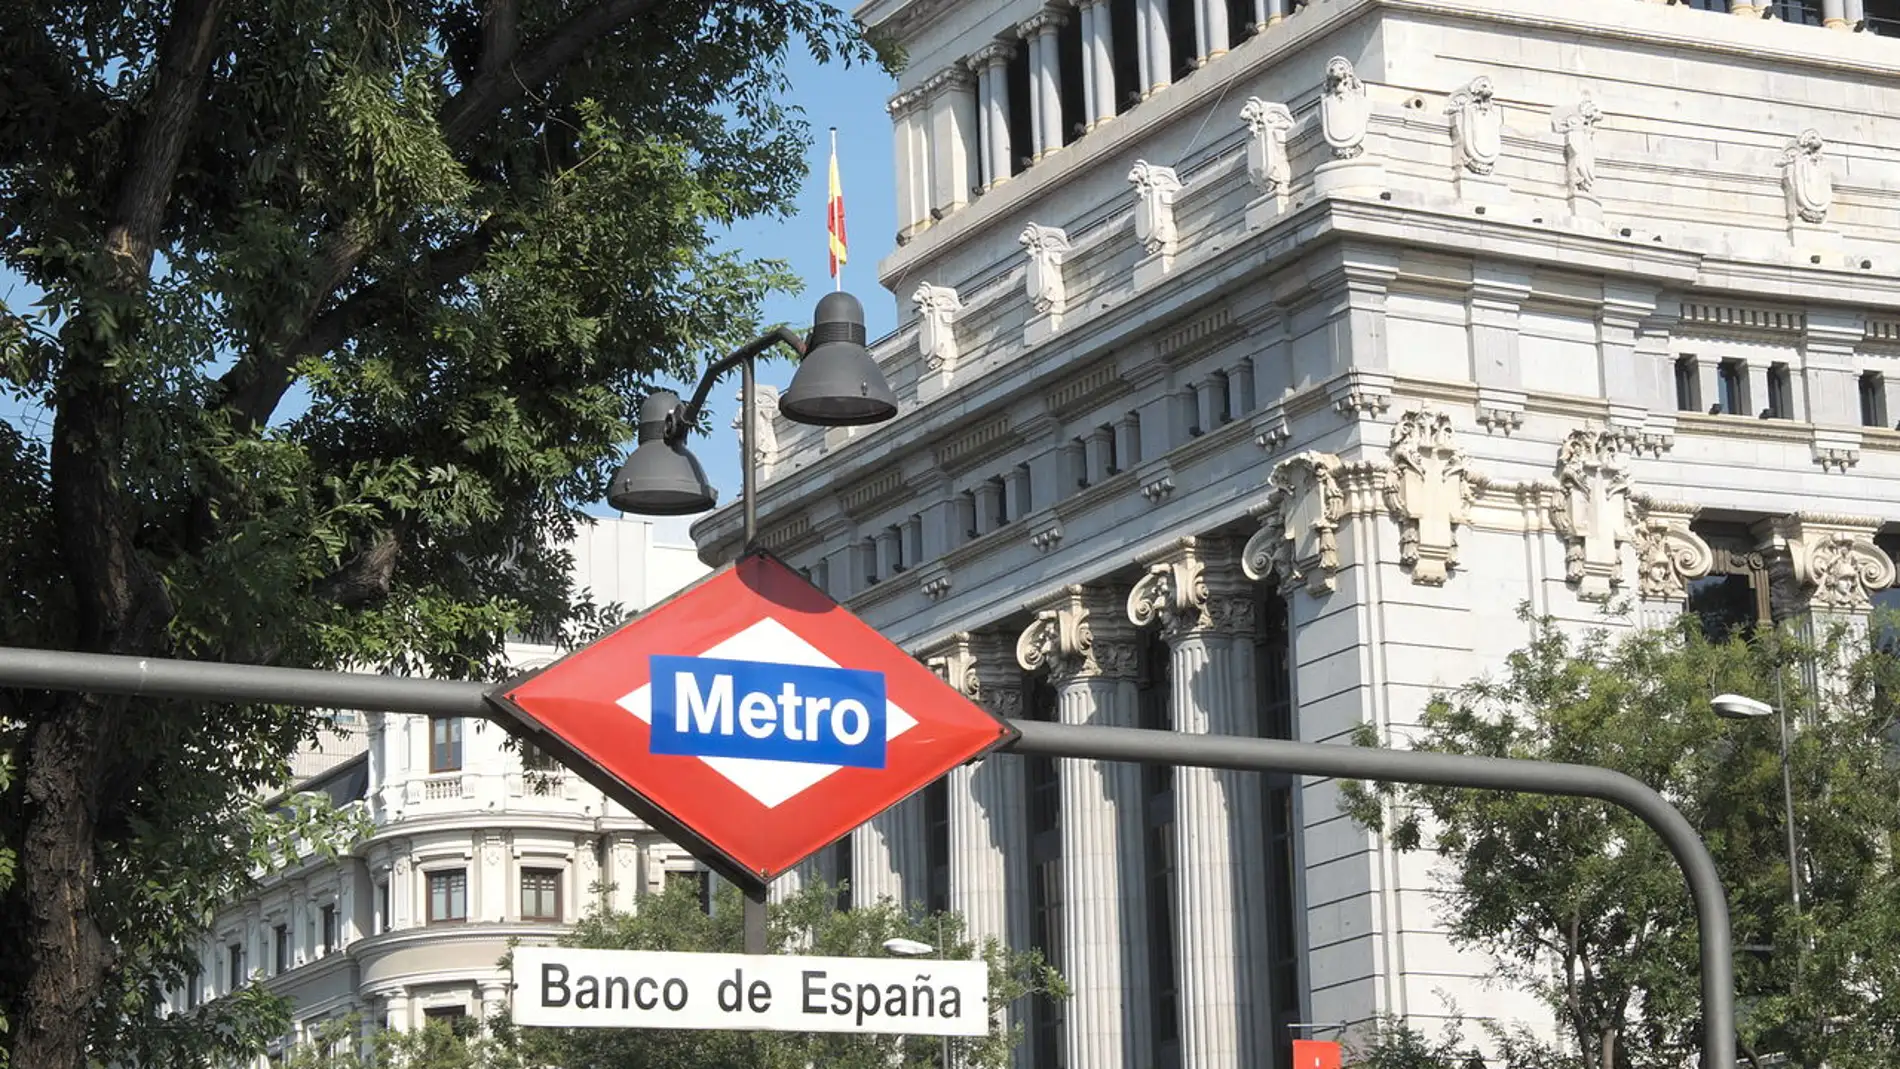 Edificio del Banco de España: historia y datos curiosos que no probablemente desconocías